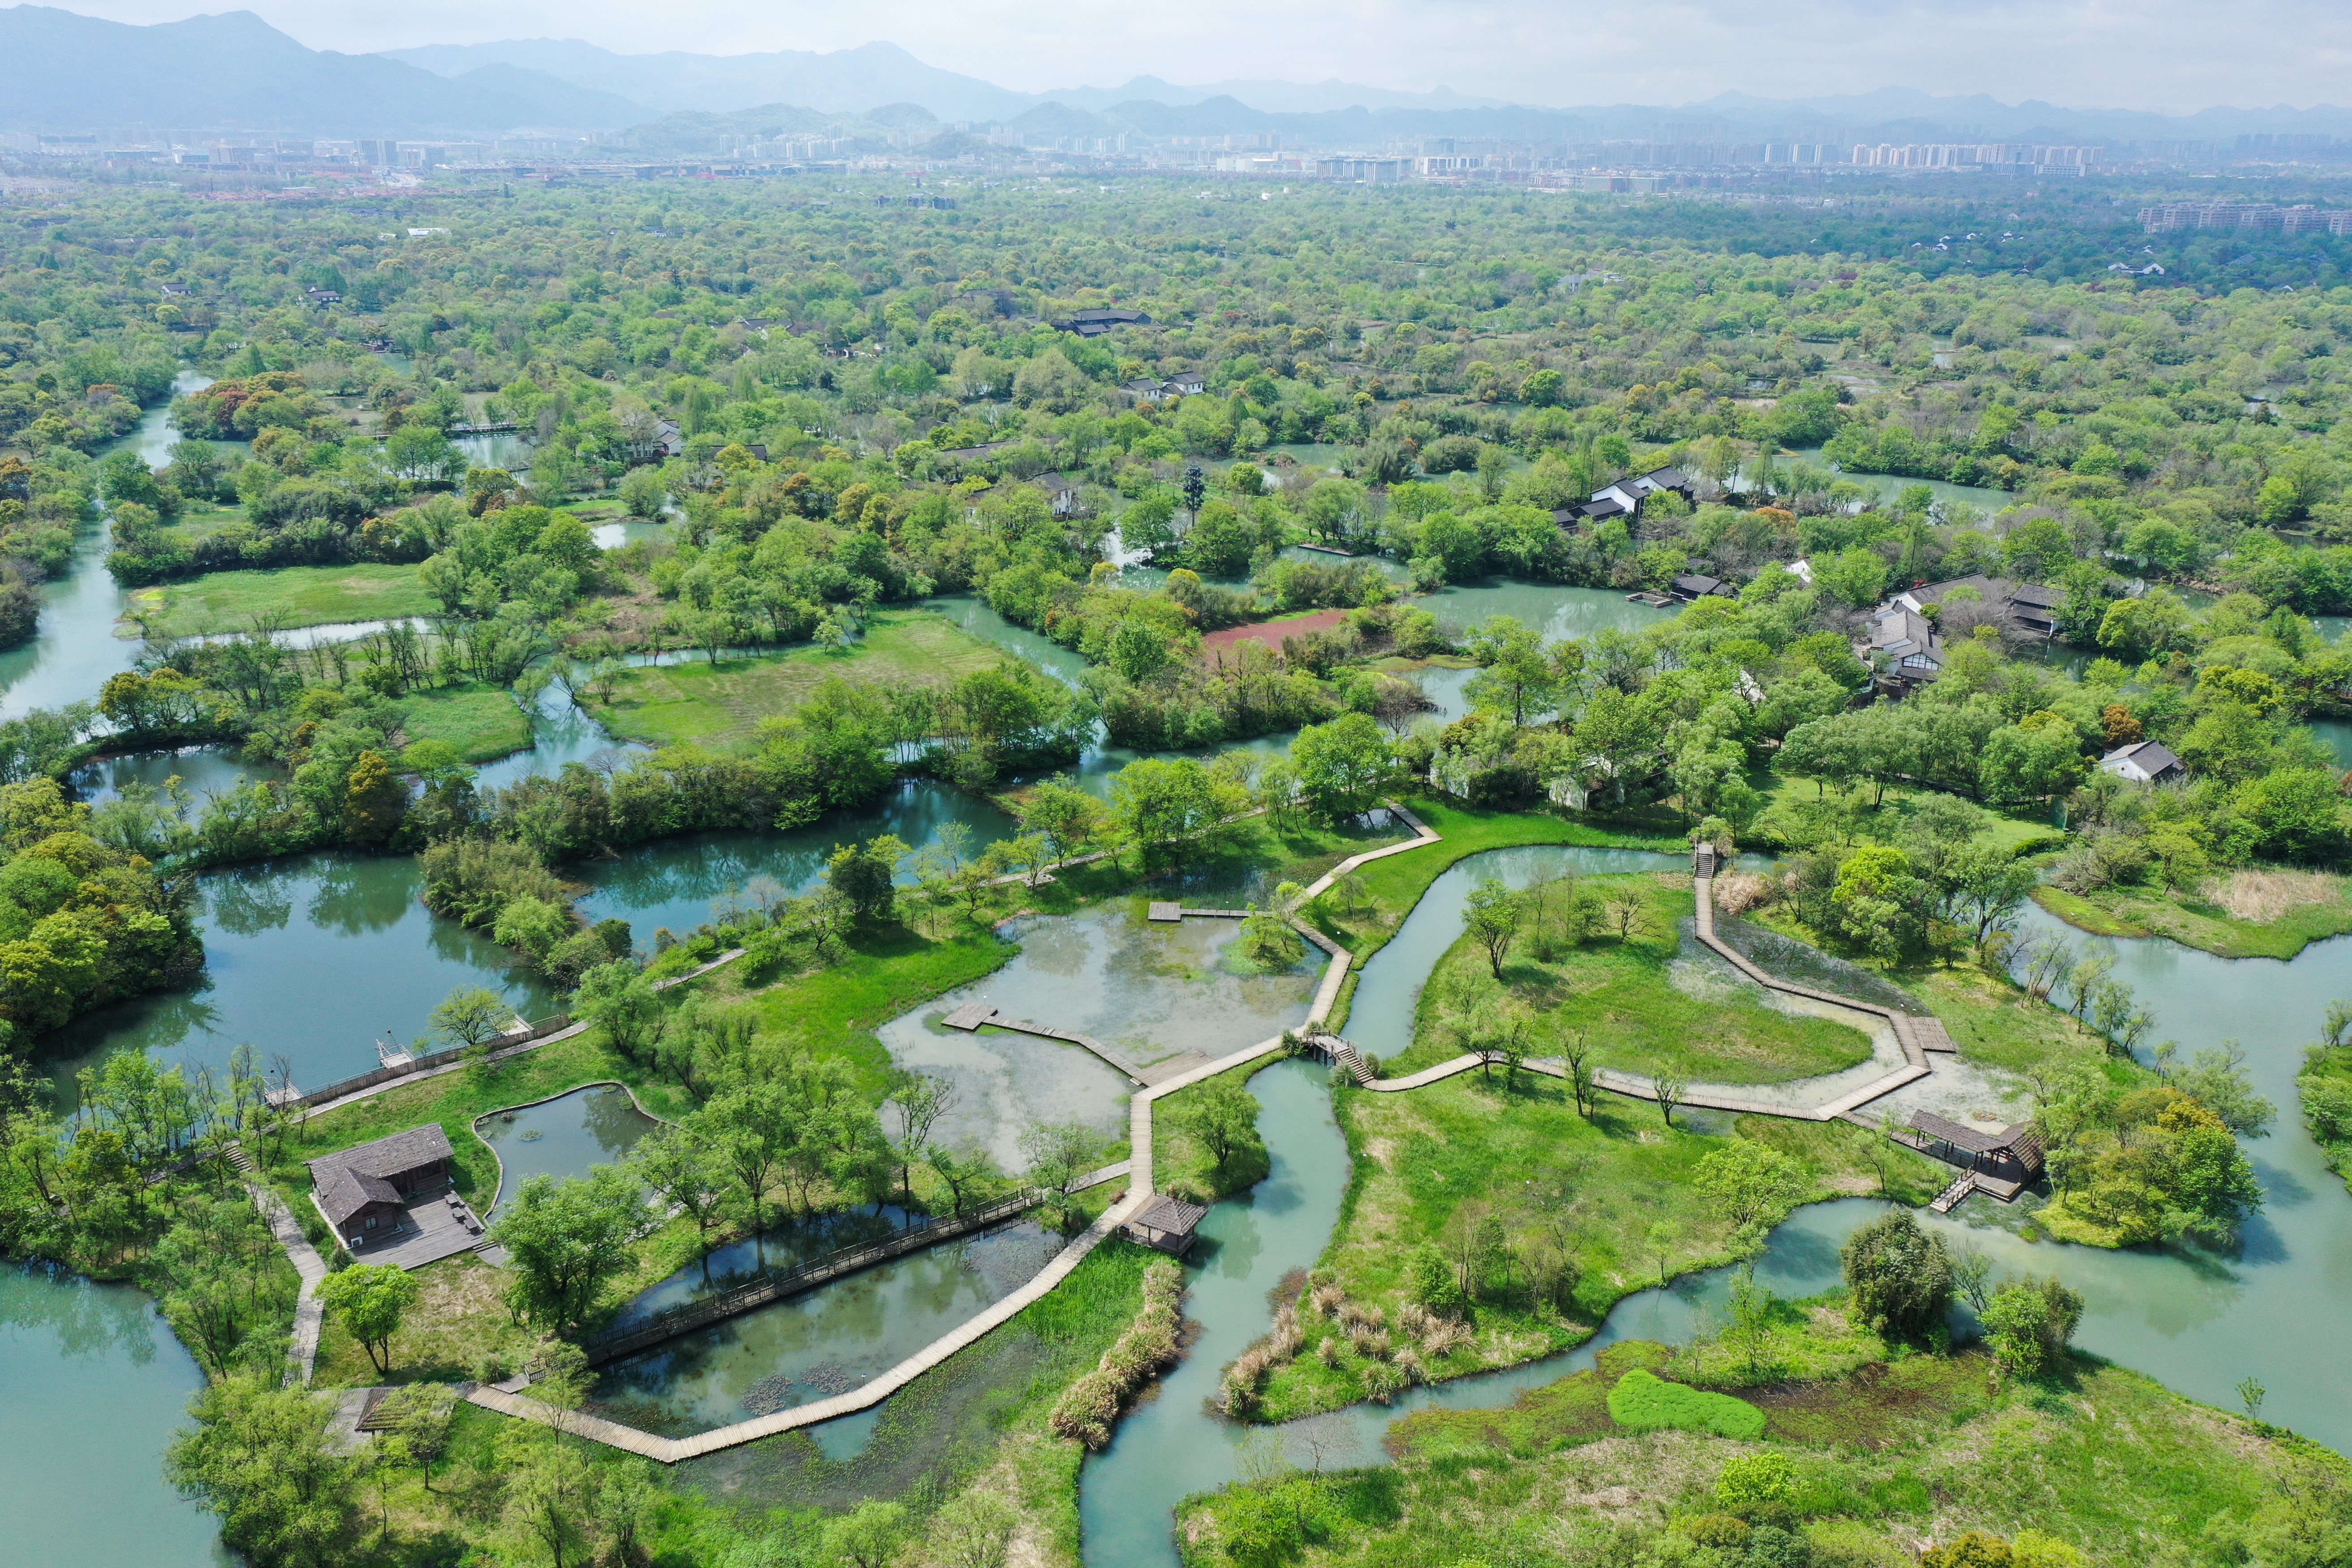 永康西溪湿地公园图片